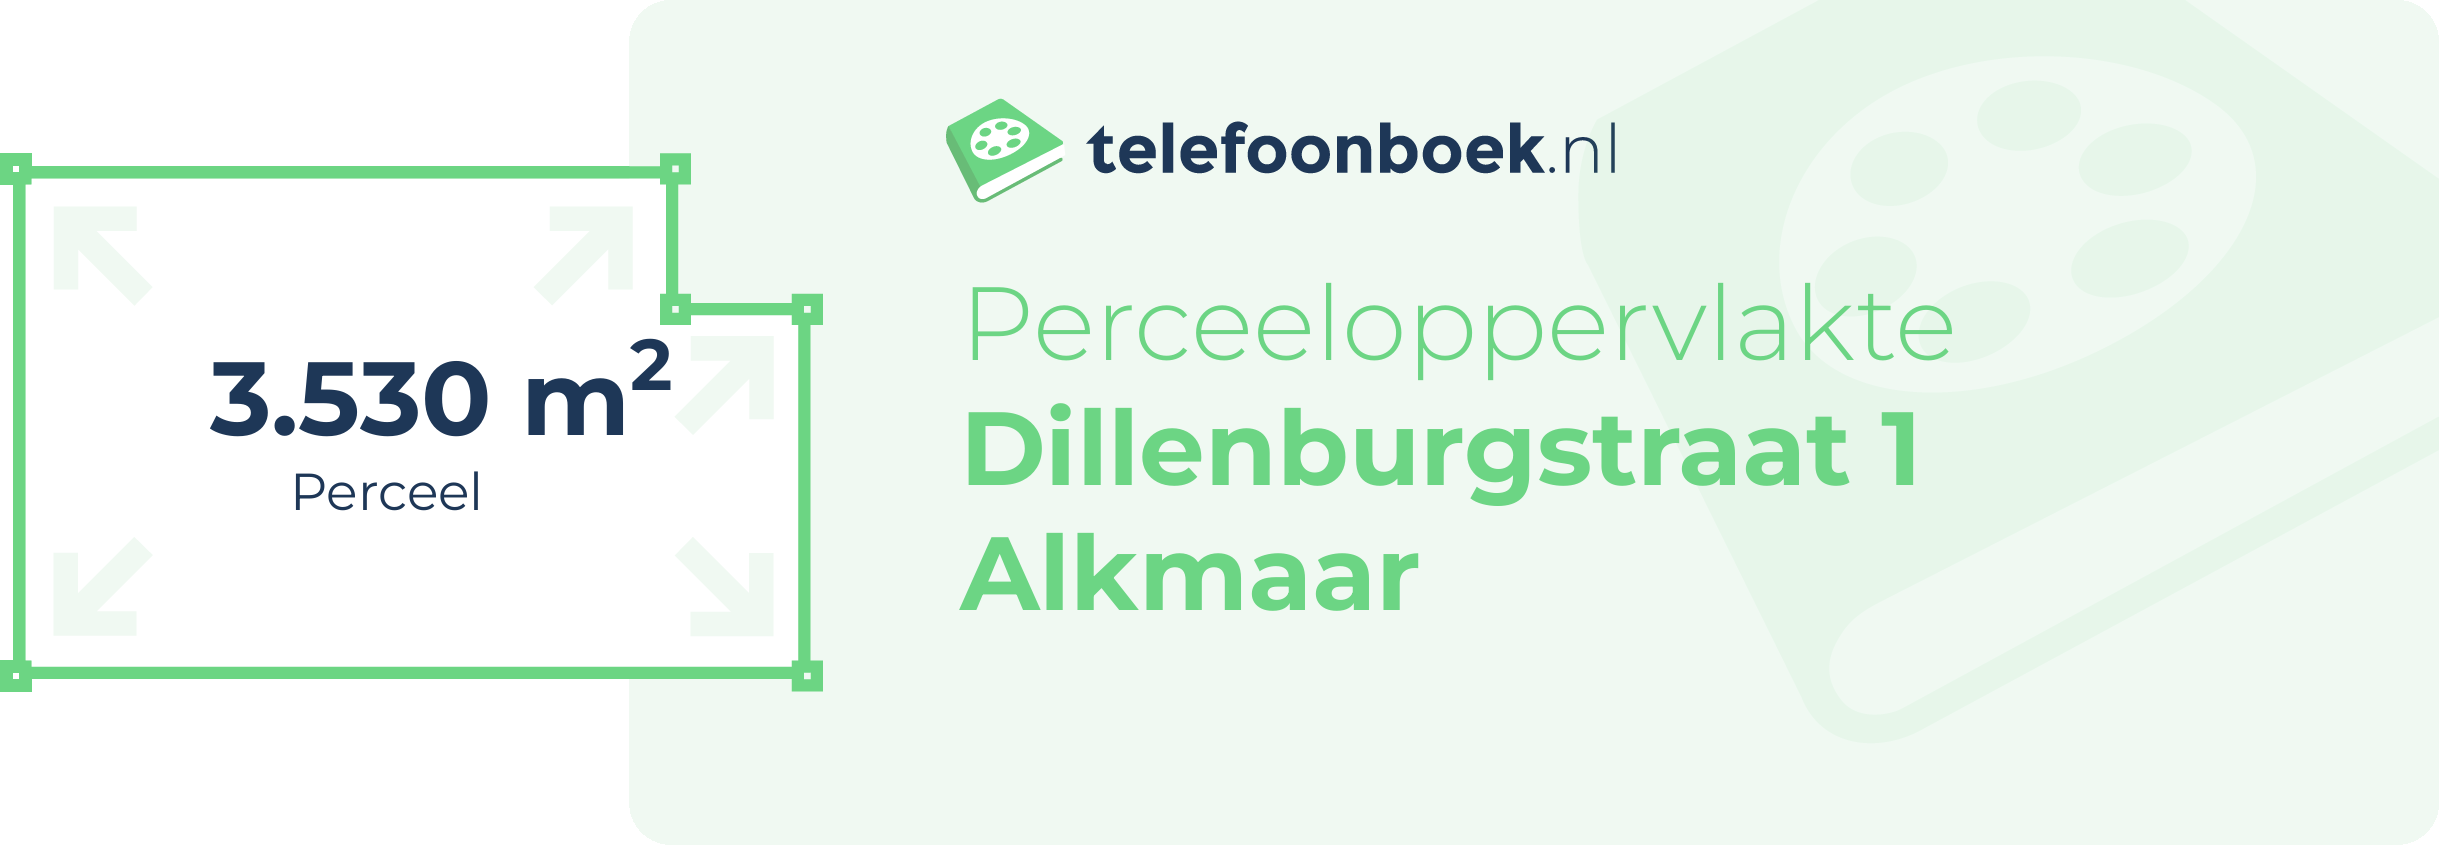 Perceeloppervlakte Dillenburgstraat 1 Alkmaar